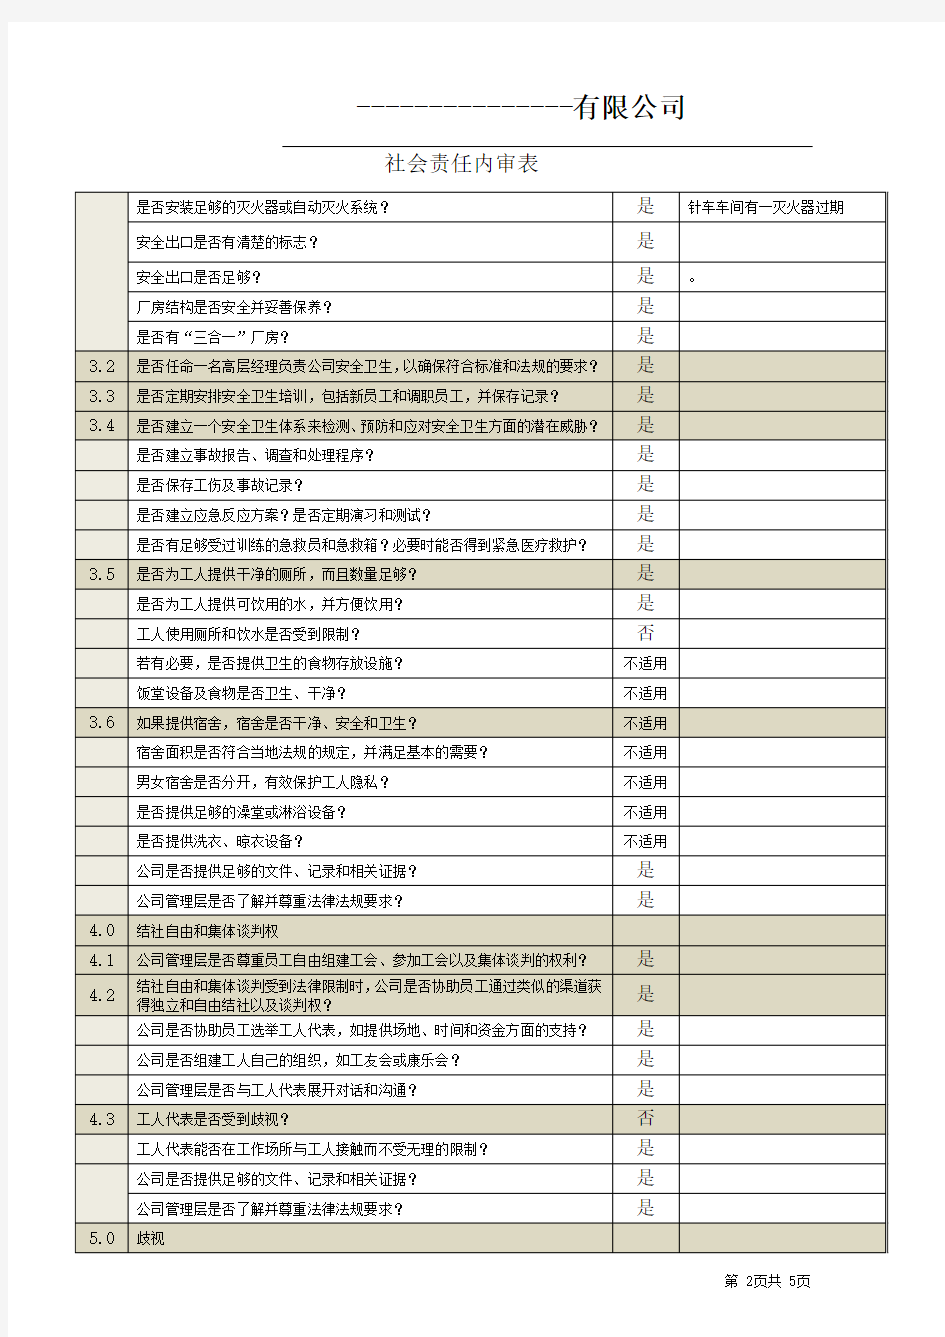 BSCI2.0内审检查表